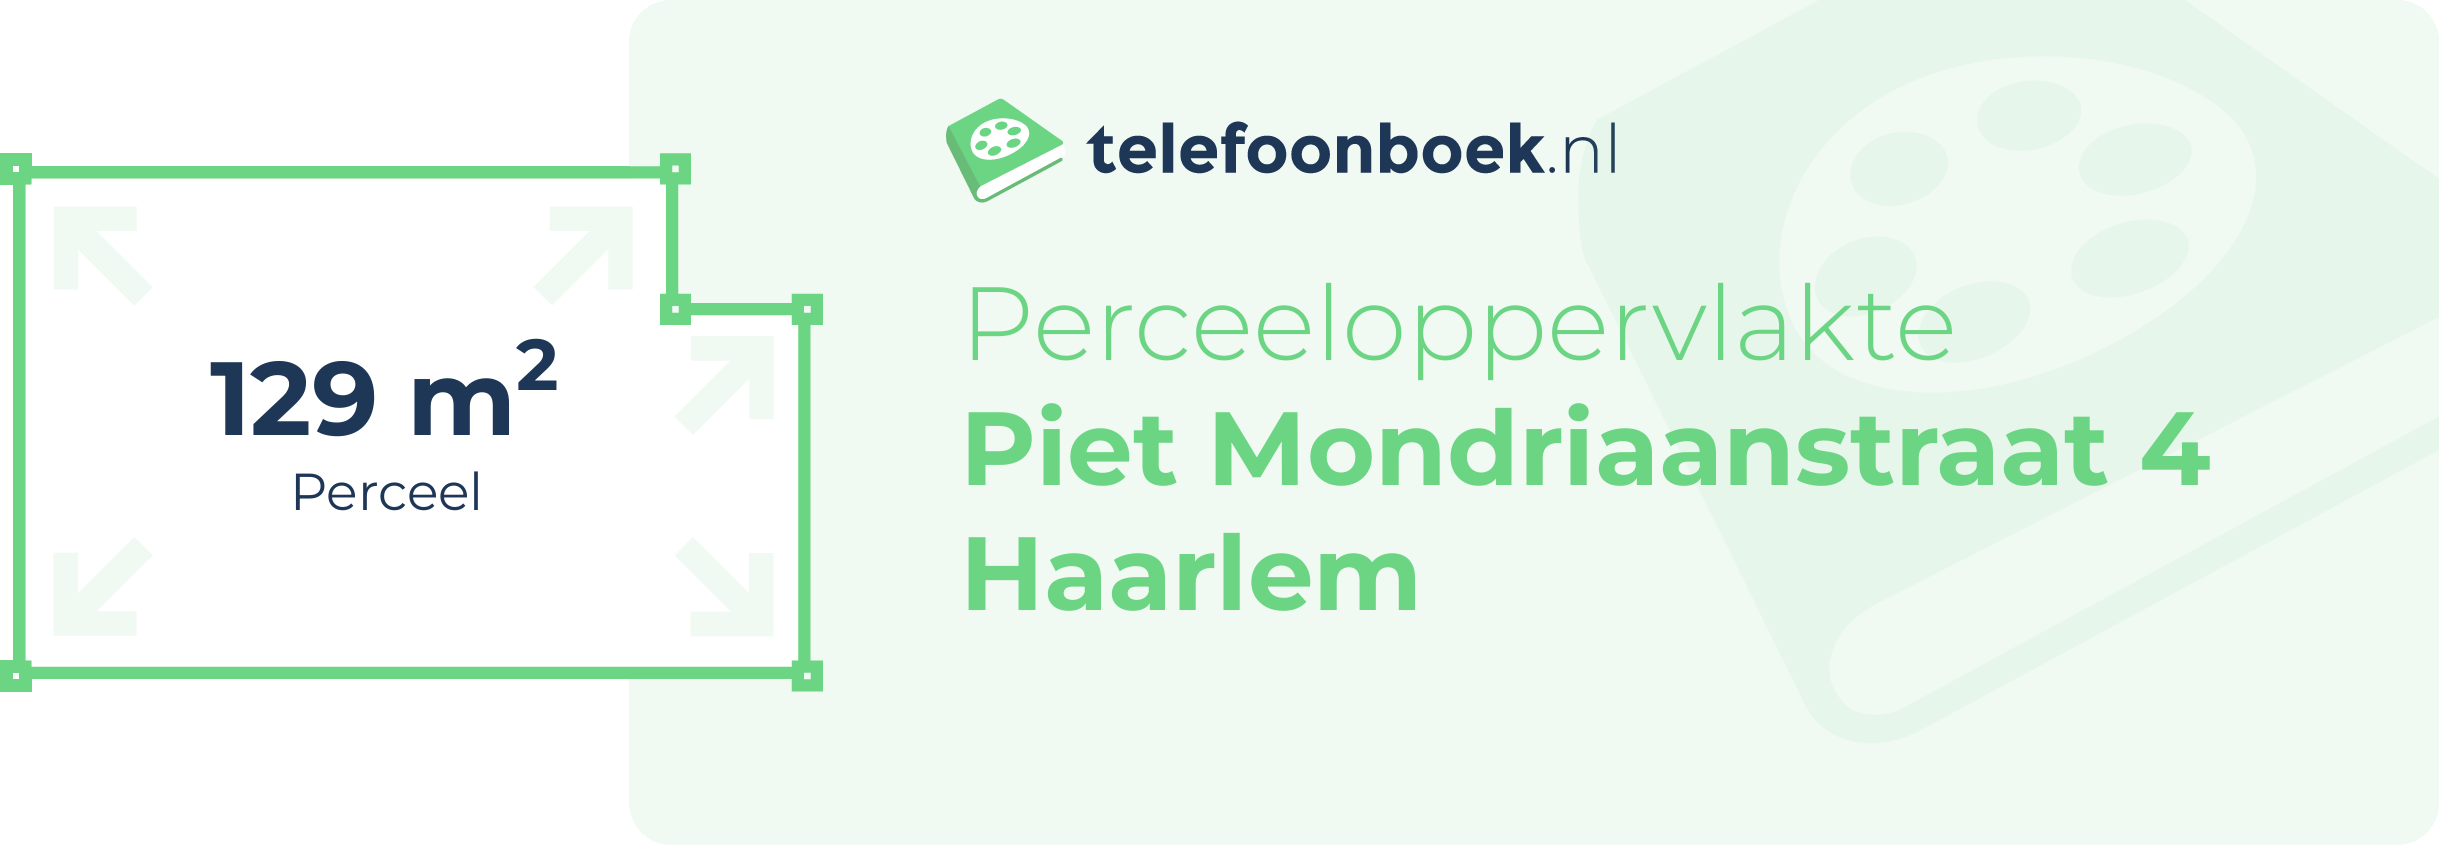 Perceeloppervlakte Piet Mondriaanstraat 4 Haarlem